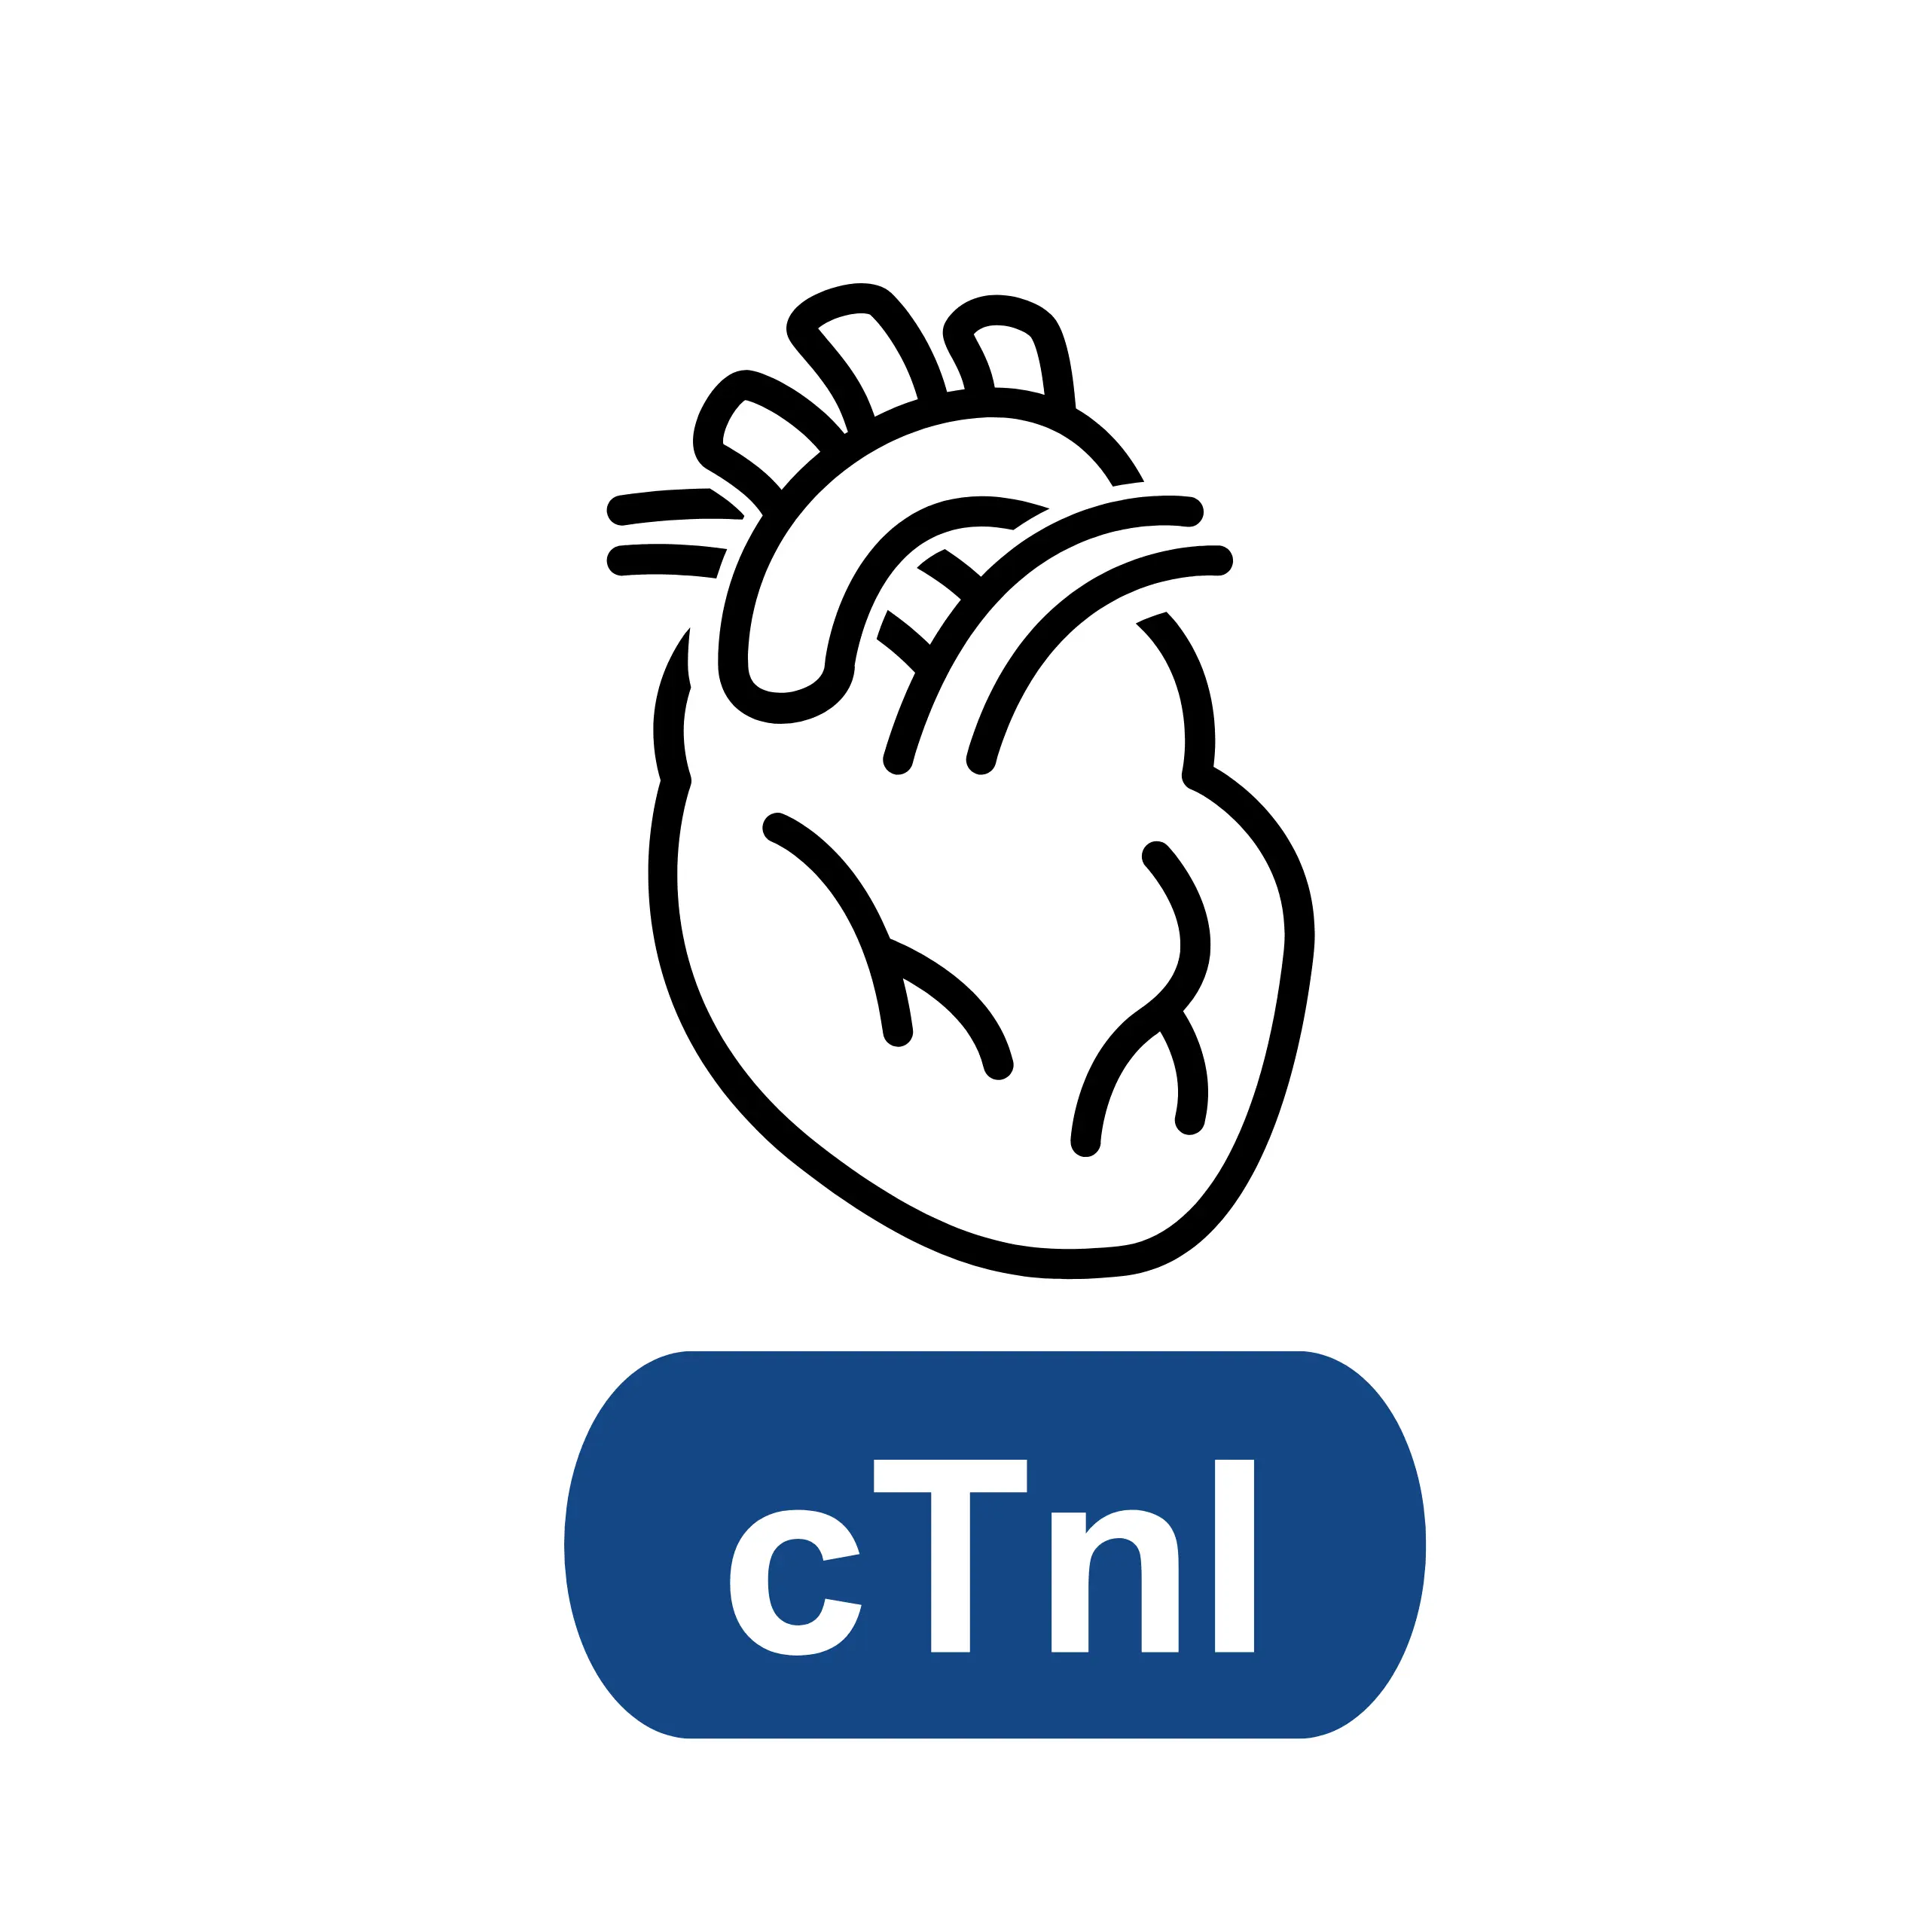 Cardiac Troponin I (cTnI)